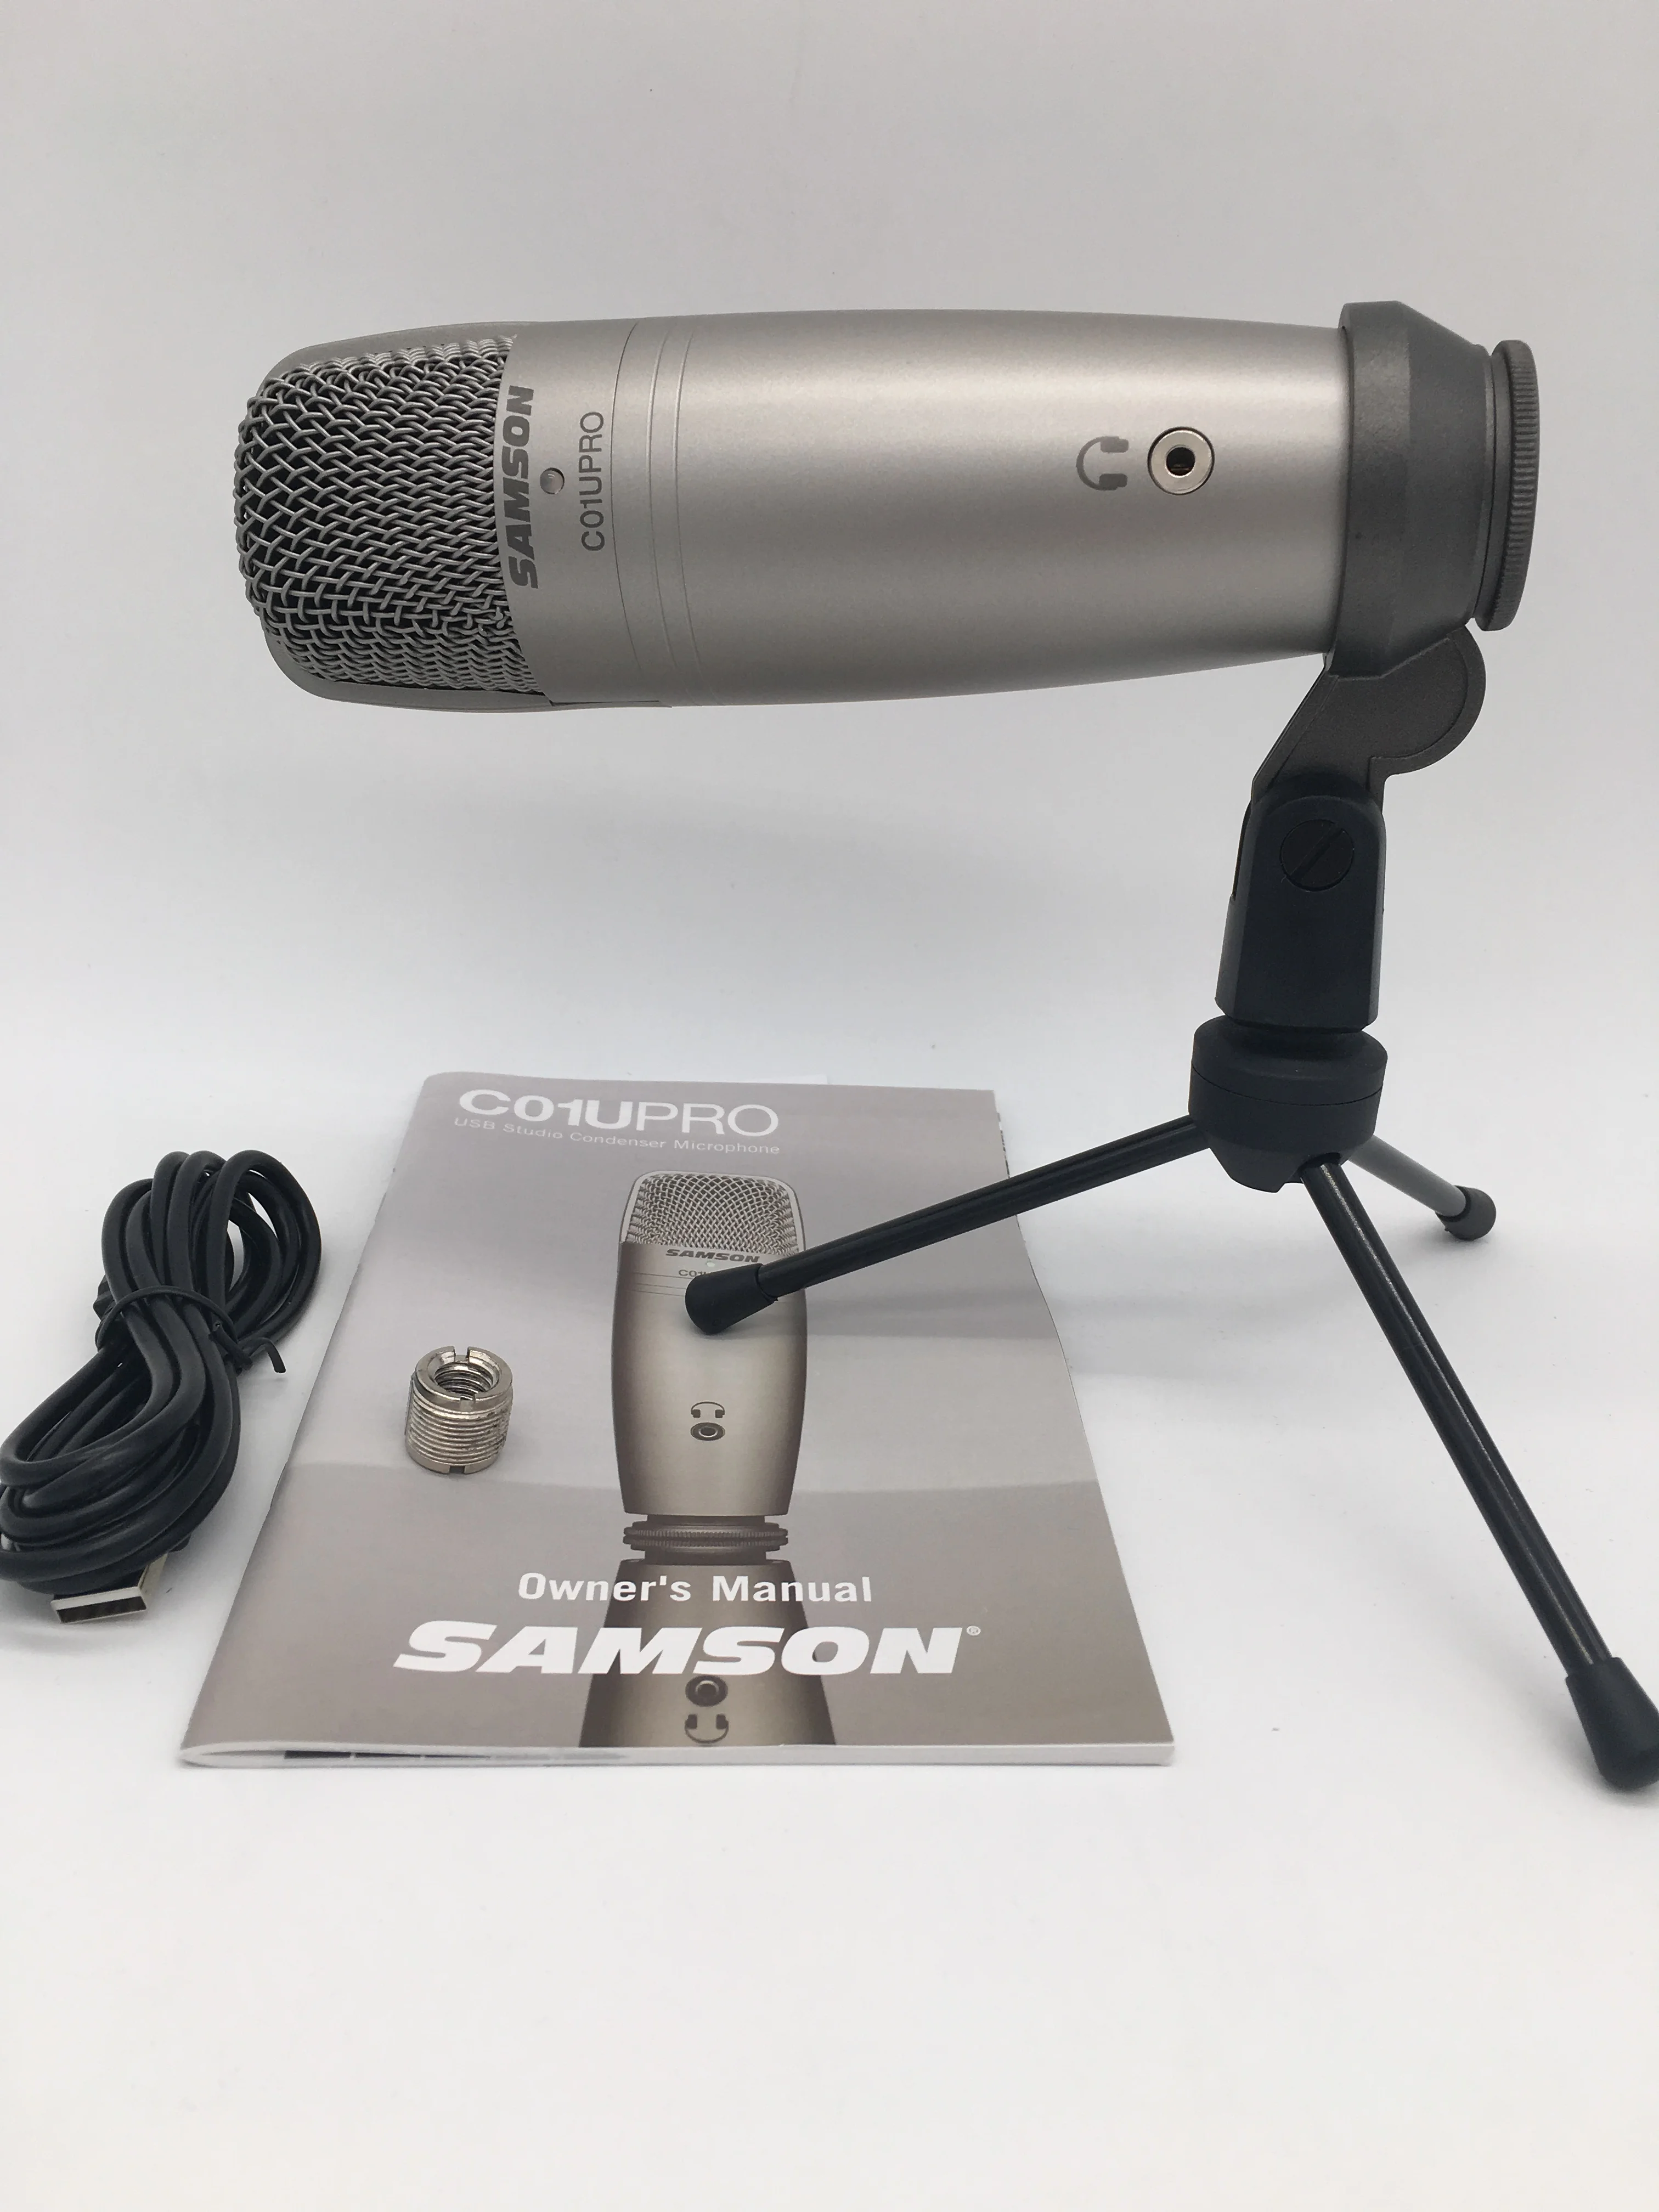 Samson C01U Pro microfono a condensatore da Studio USB con monitoraggio in  tempo reale microfono a condensatore a membrana larga per trasmissione -  AliExpress